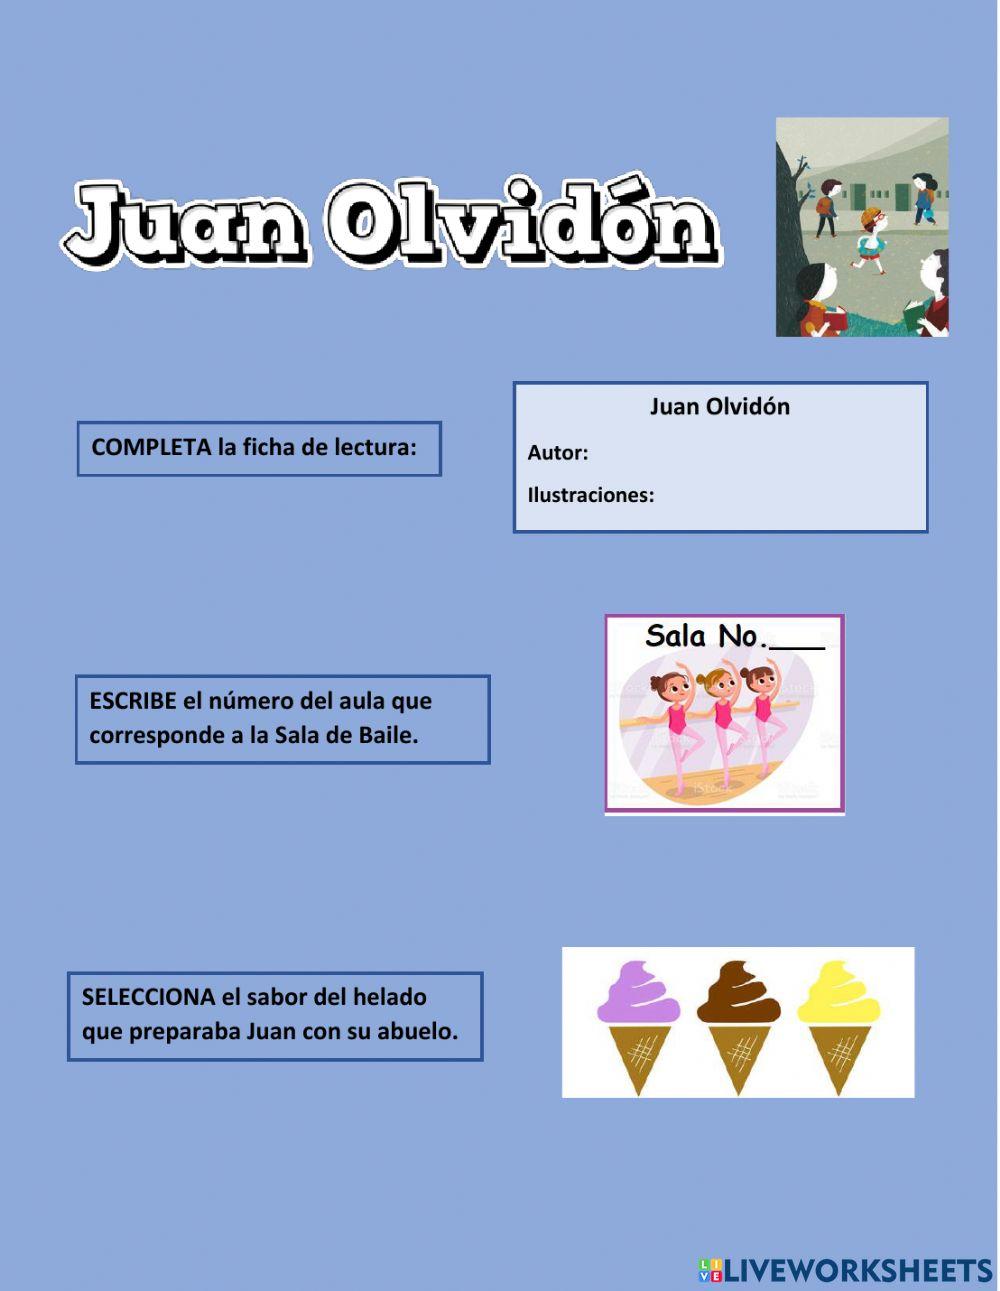 Juan Olvidón